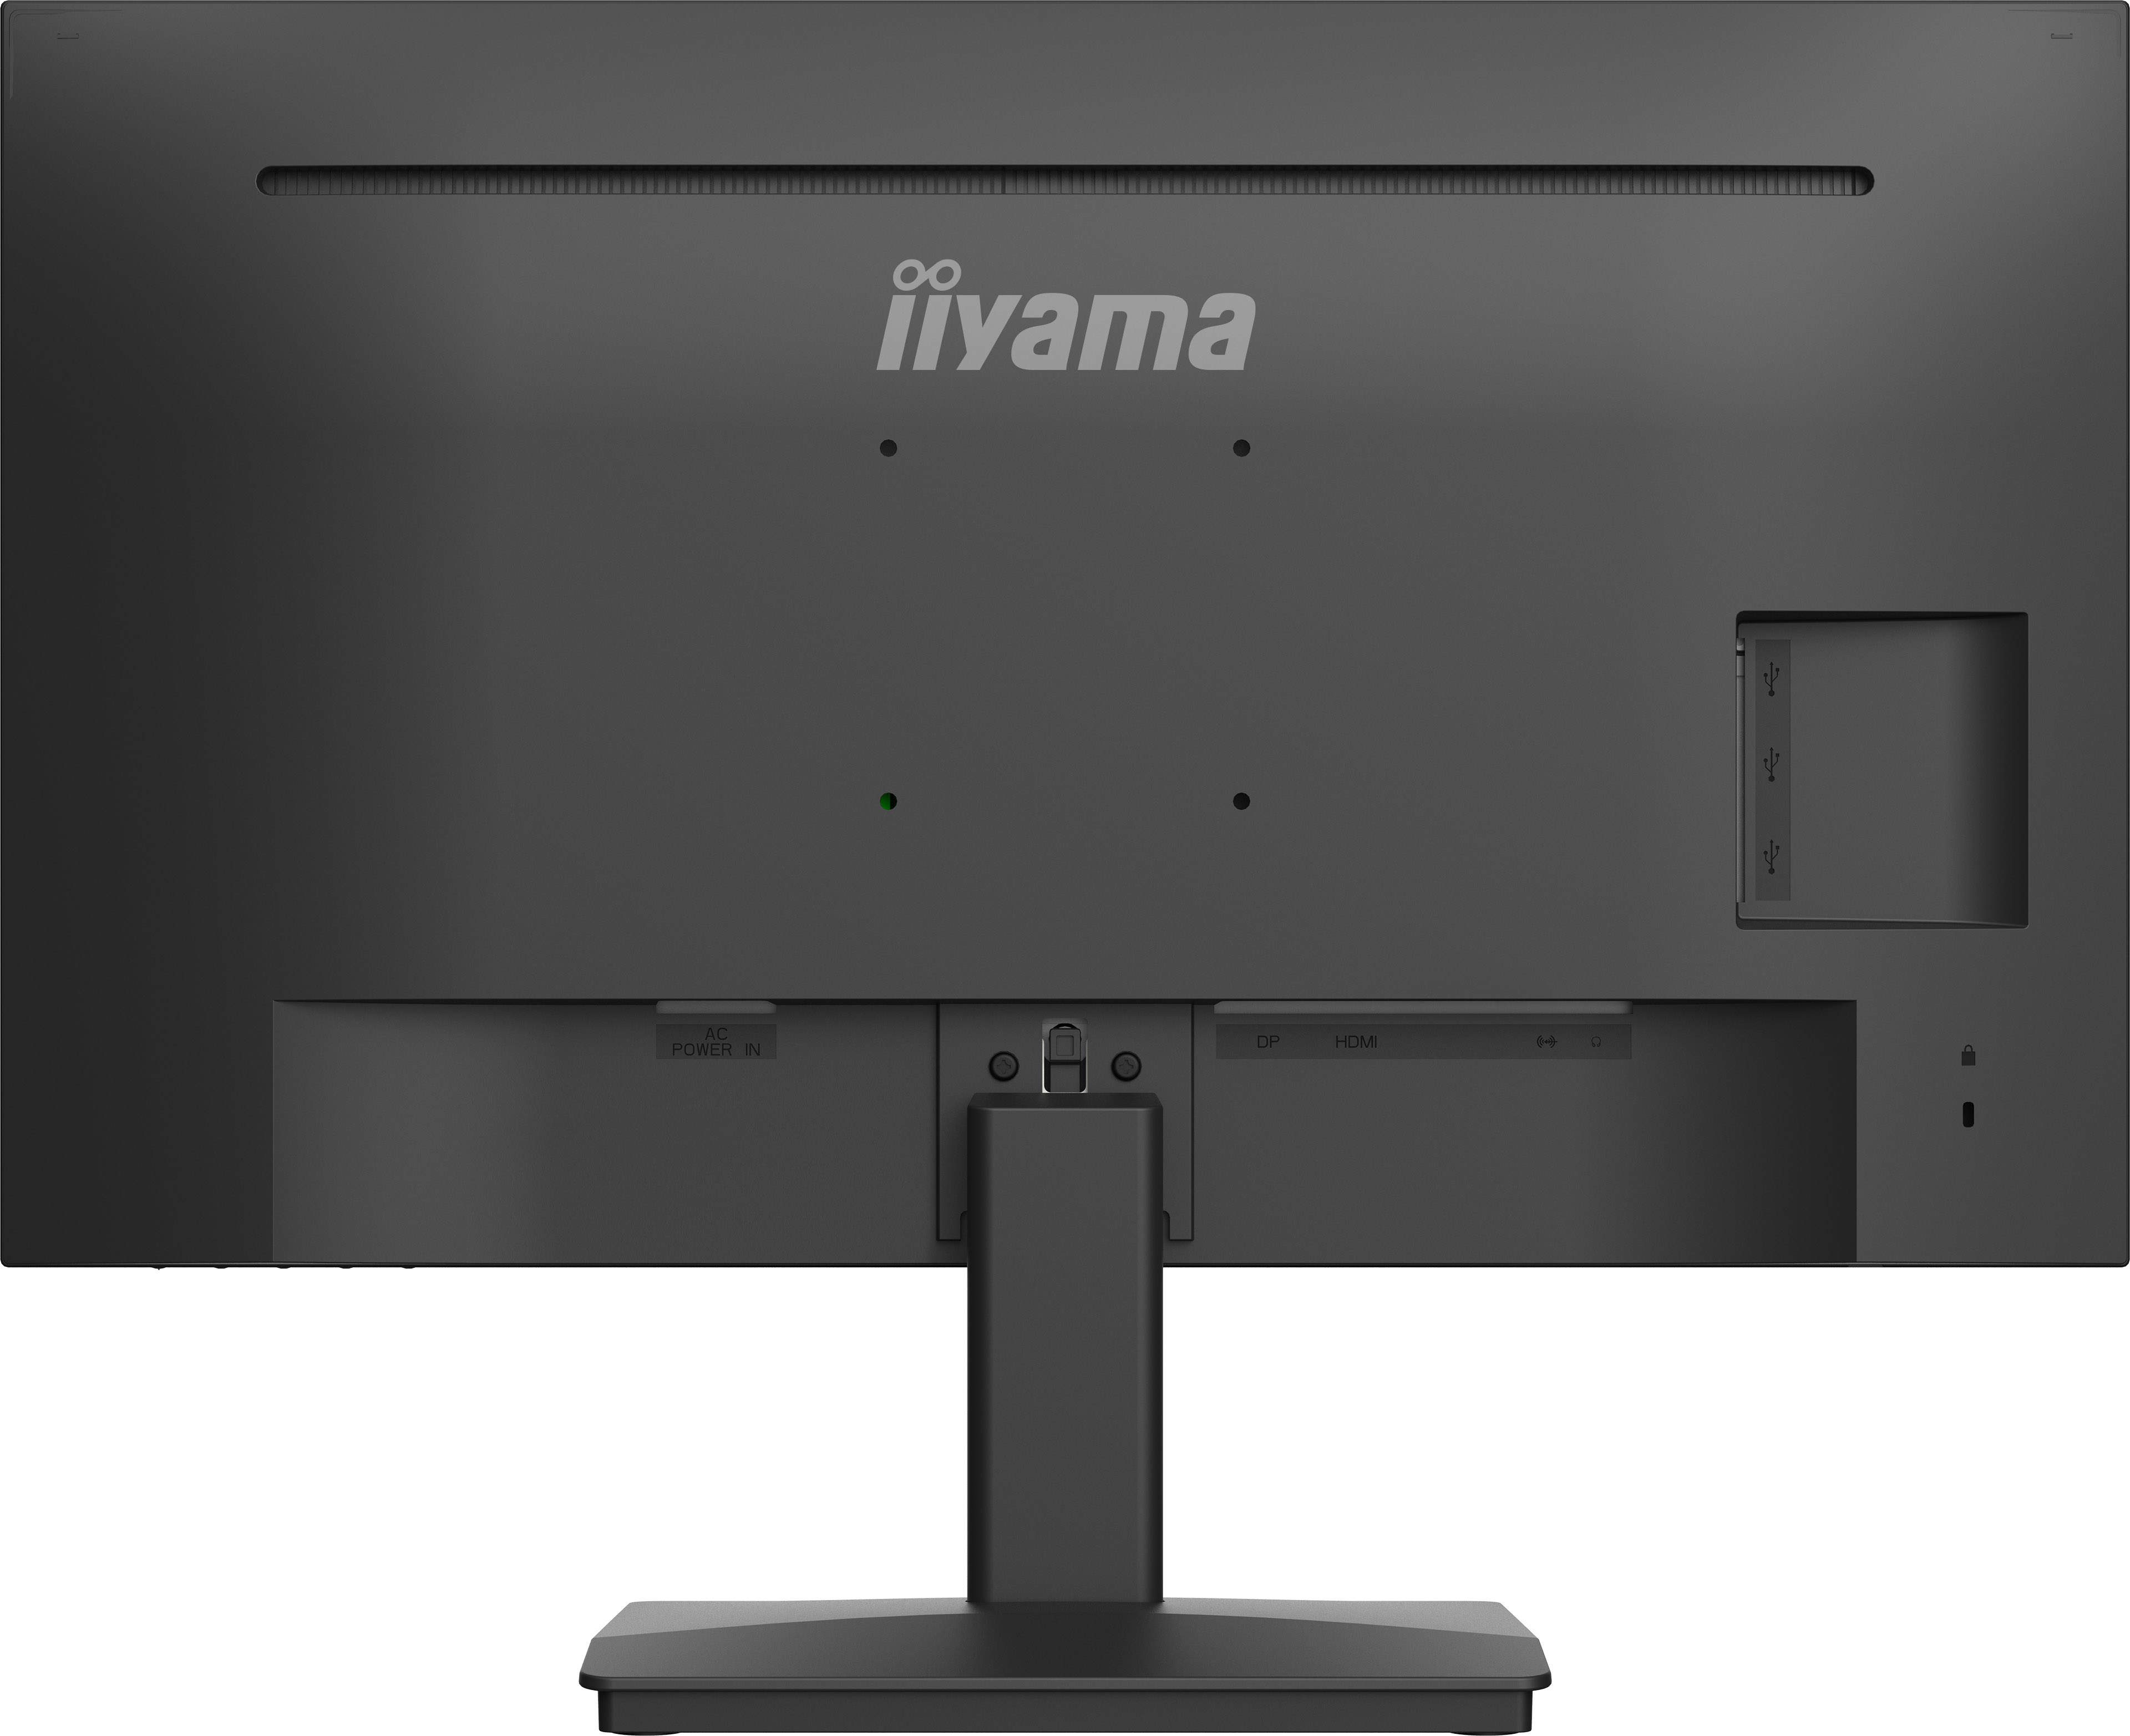 IIYAMA Monitor XU2793HS-B6